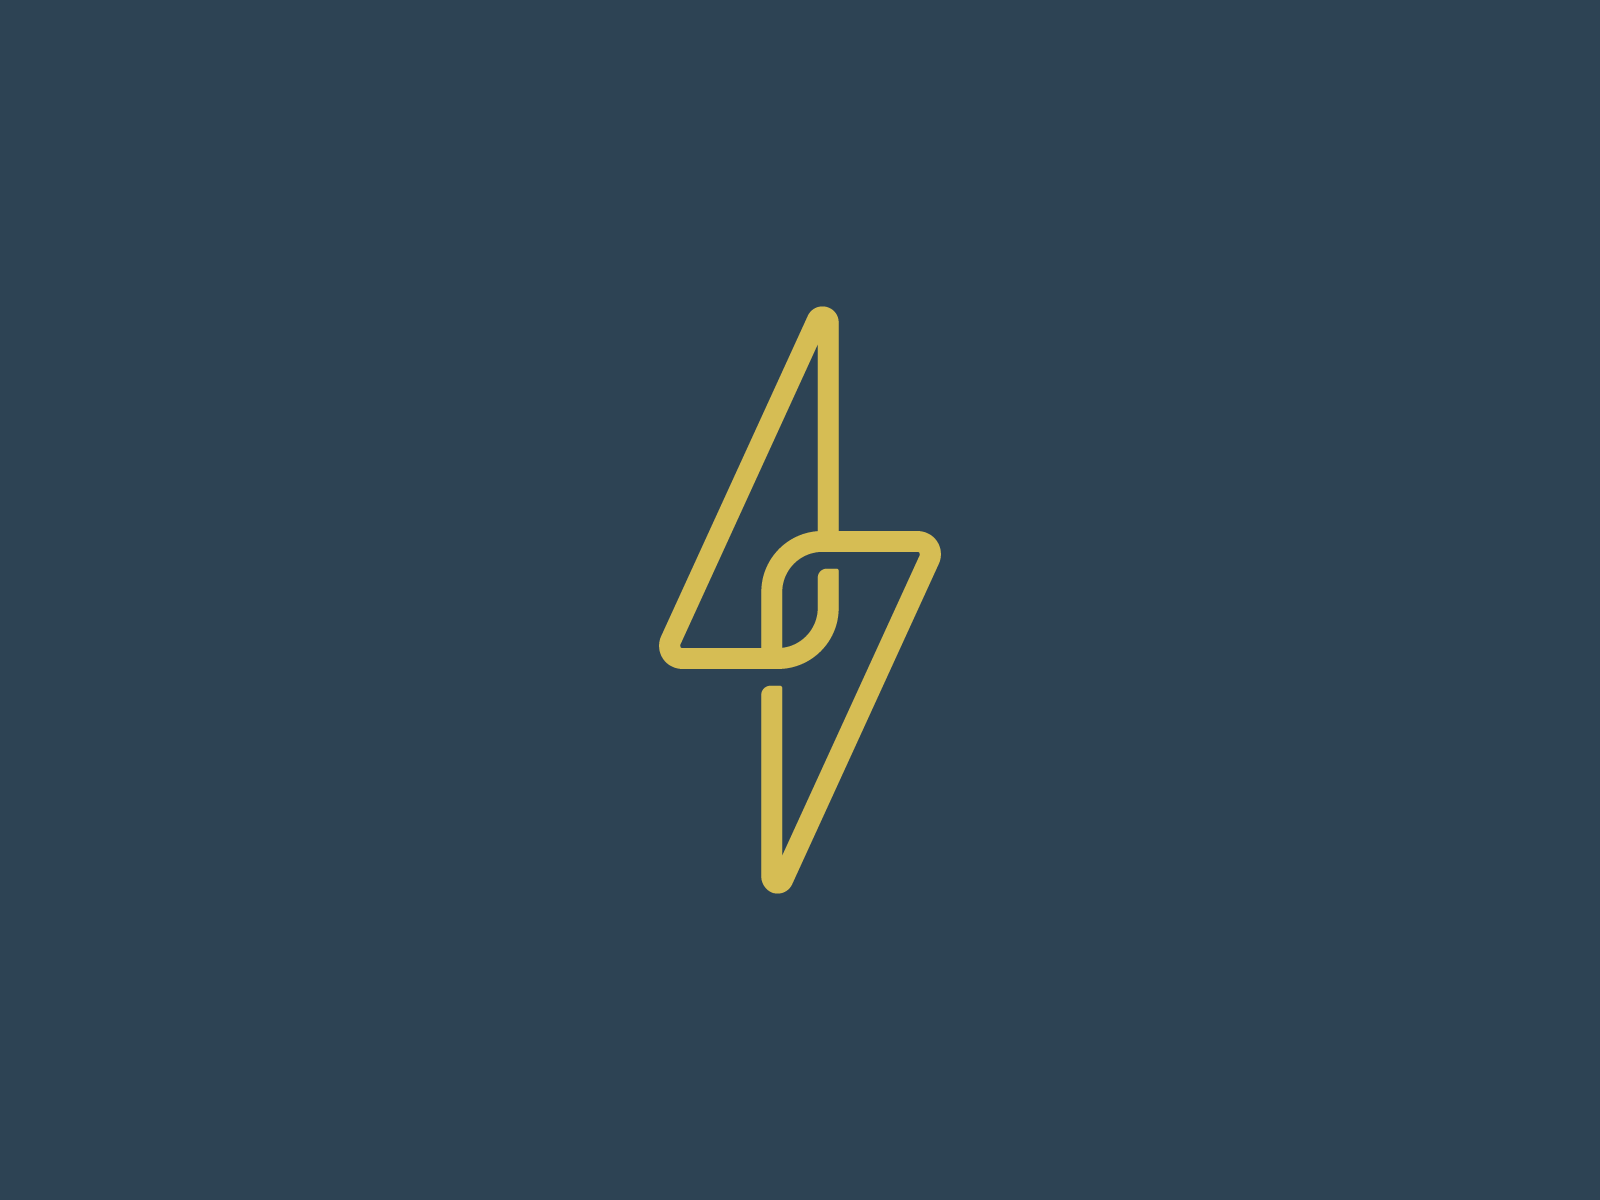 Lightening Logo - Lightning Bolt Logo by Tommy Blake | Dribbble | Dribbble